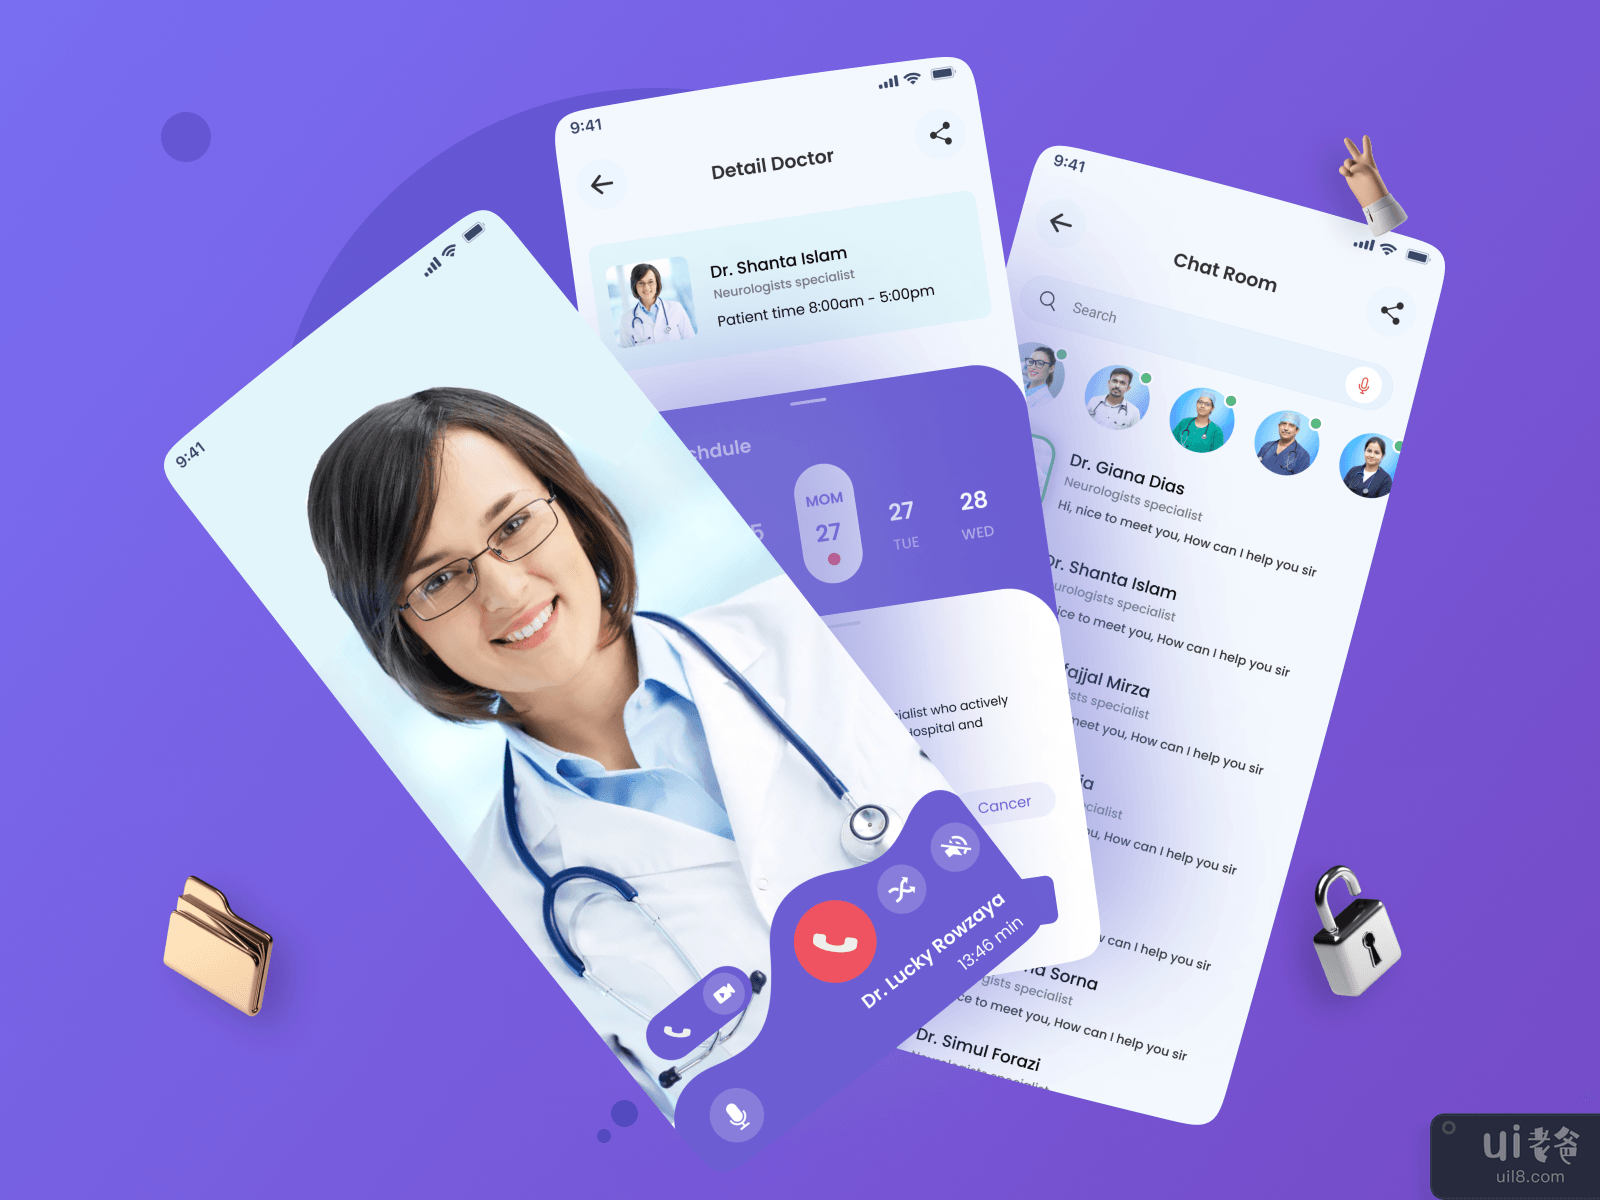 Medical Mobile App